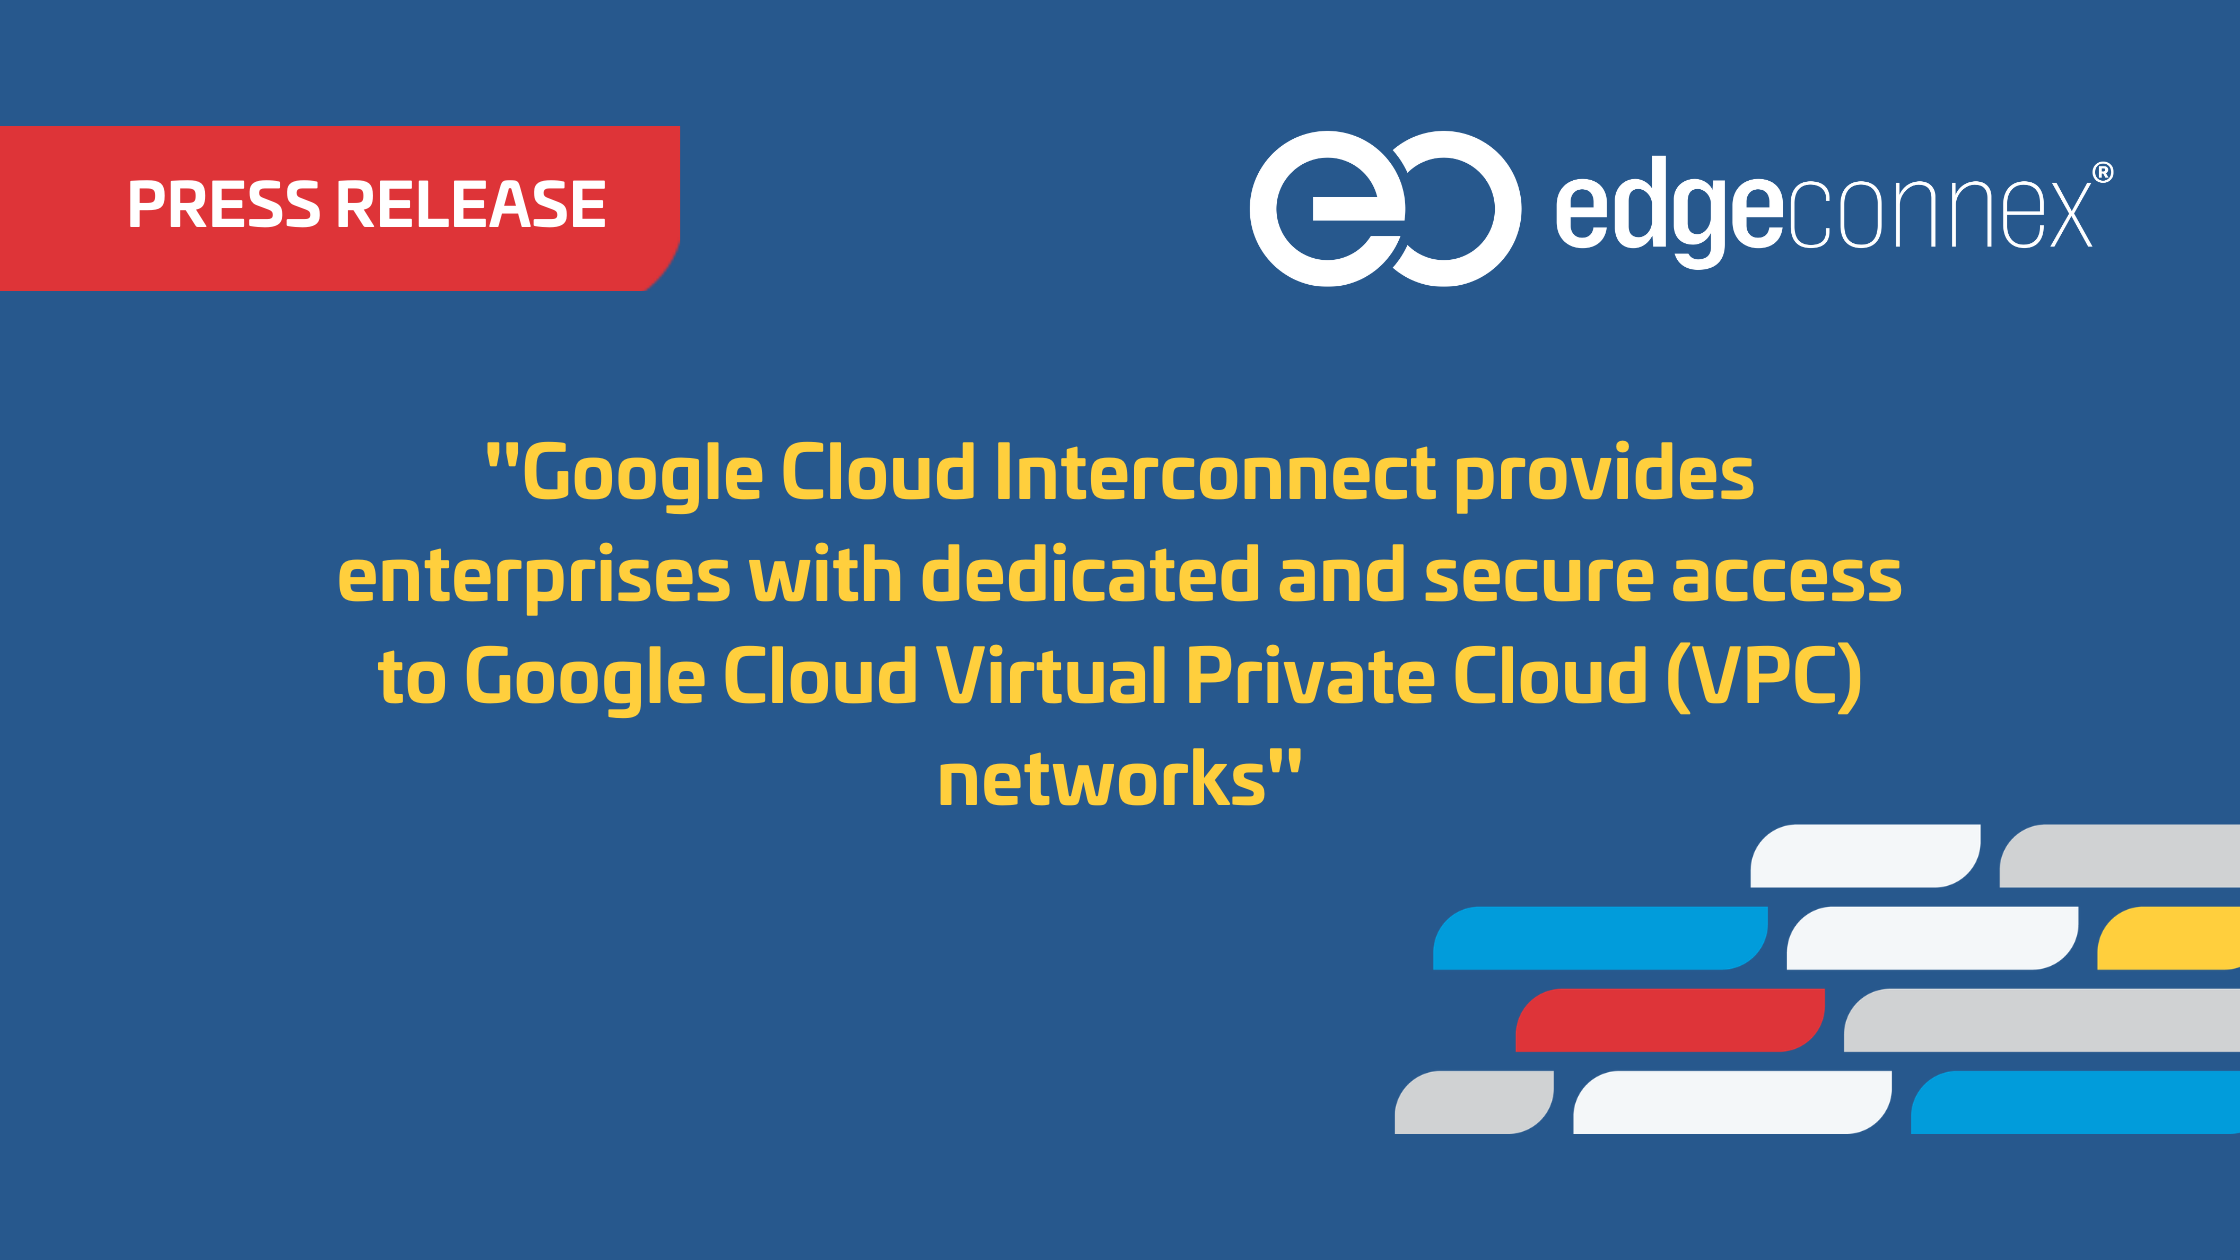 EdgeConneX Brings Google Cloud to Portland - EdgeConneX